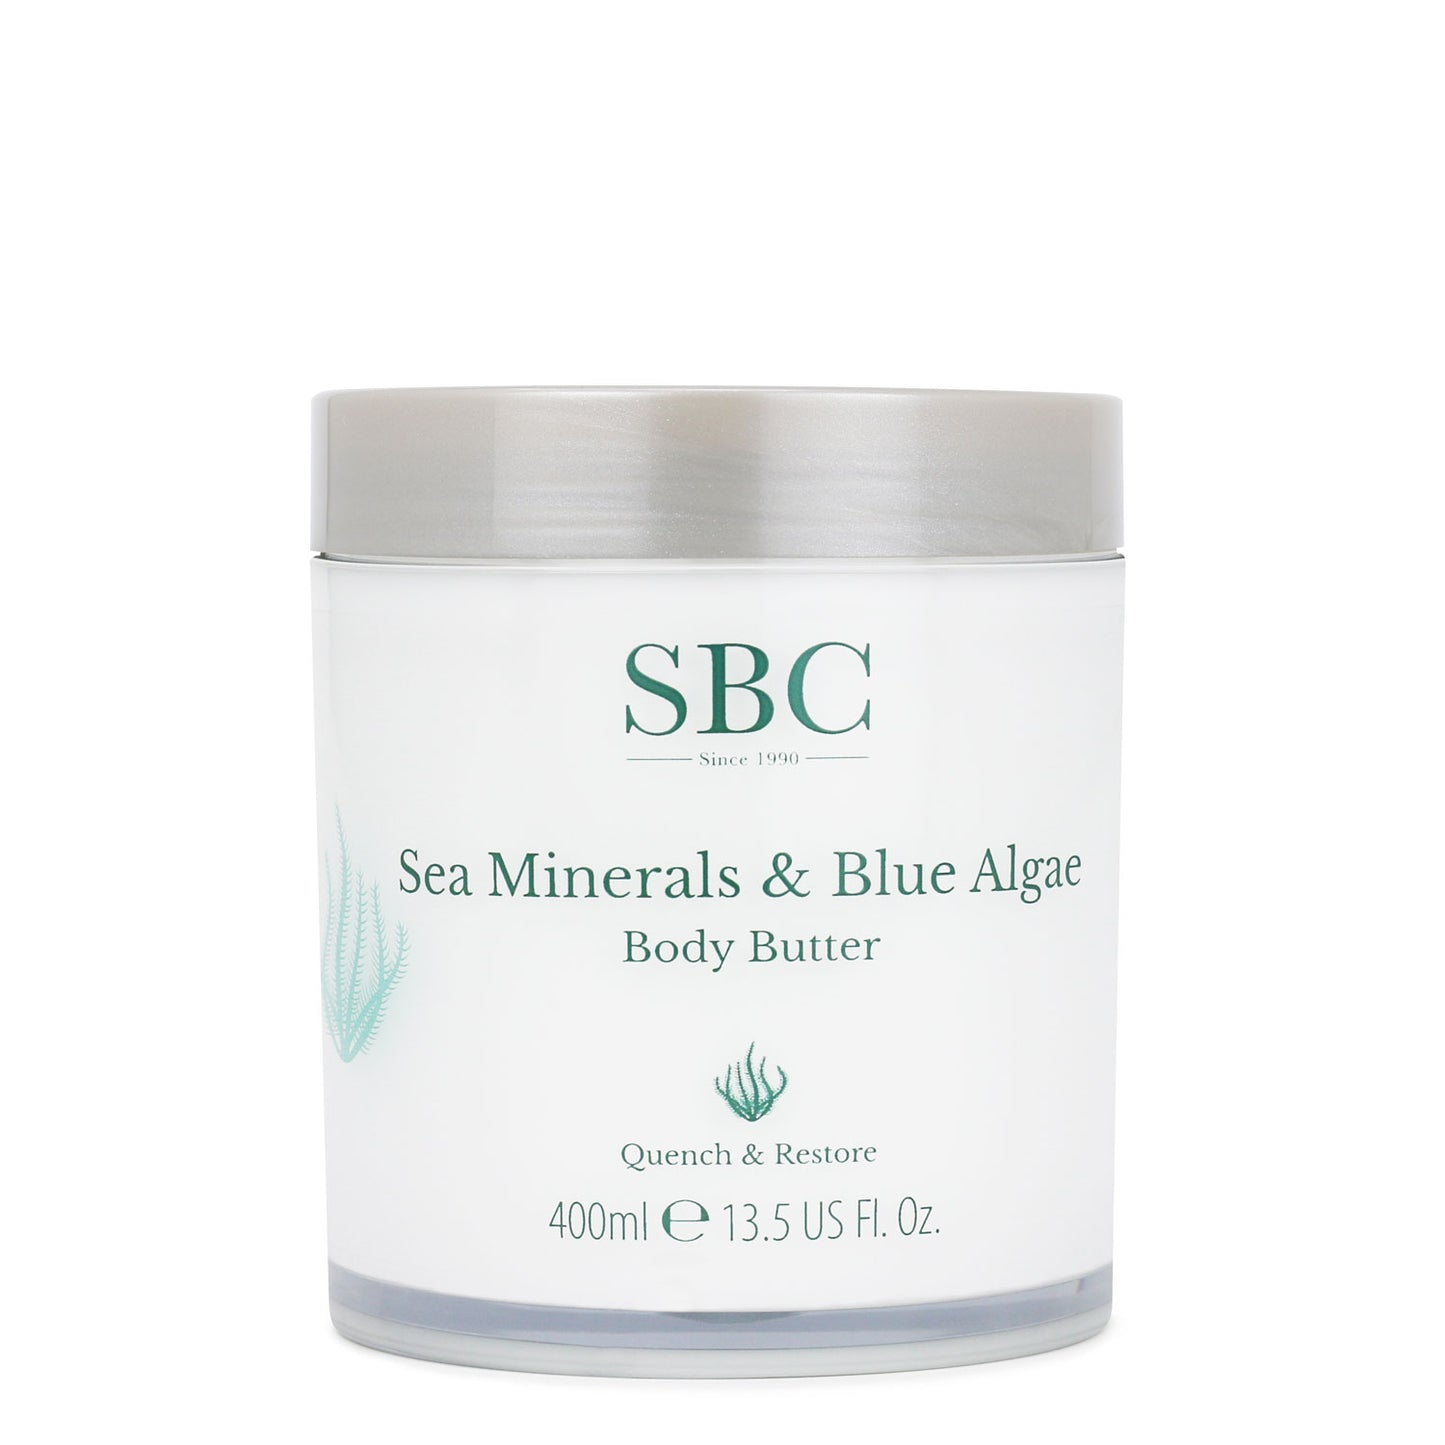 Sea Minerals & Blue Algae Body Butter 400ml